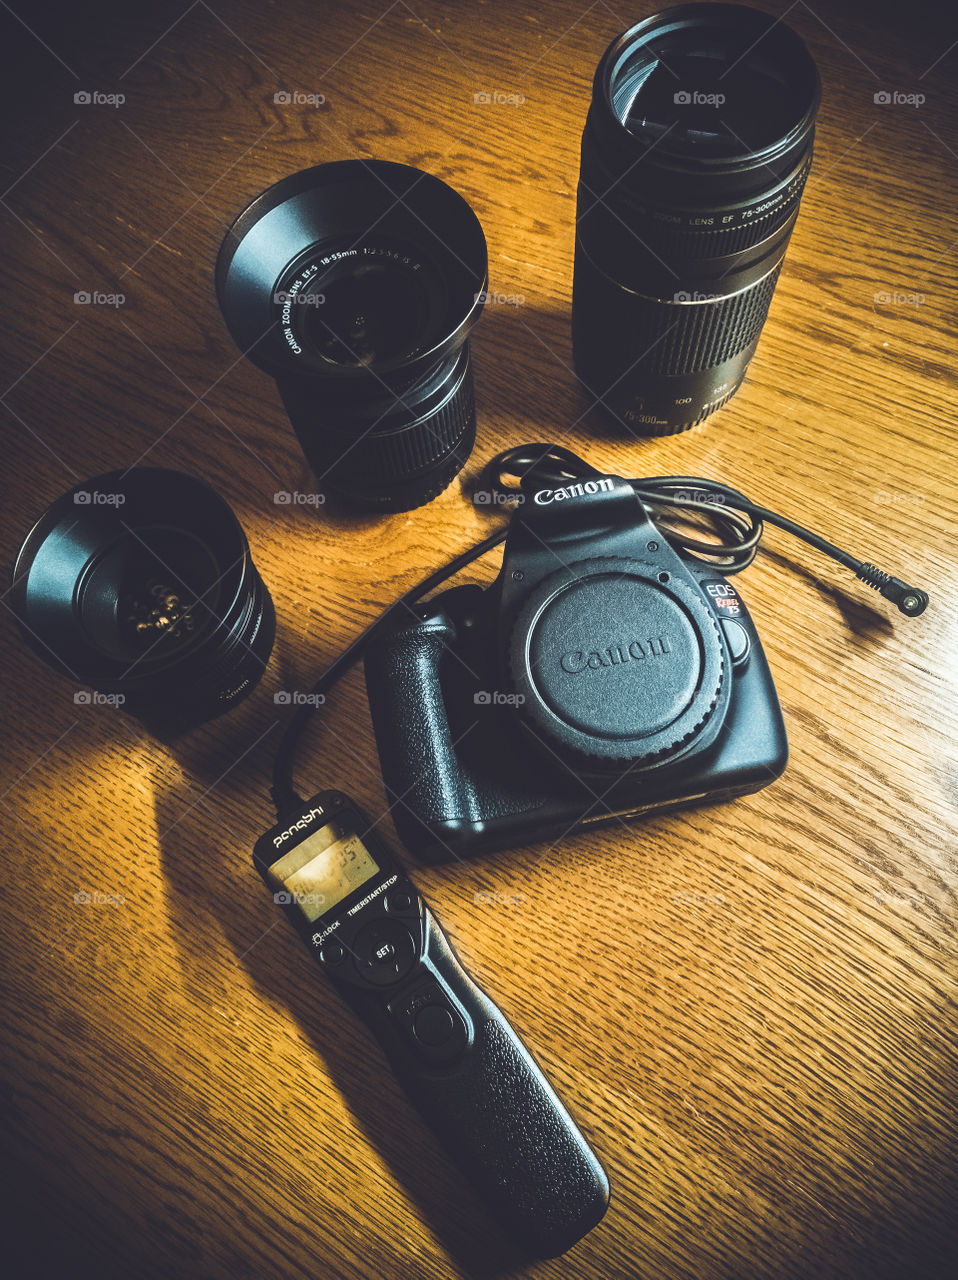 Canon Camera Gear (Rebel t5)